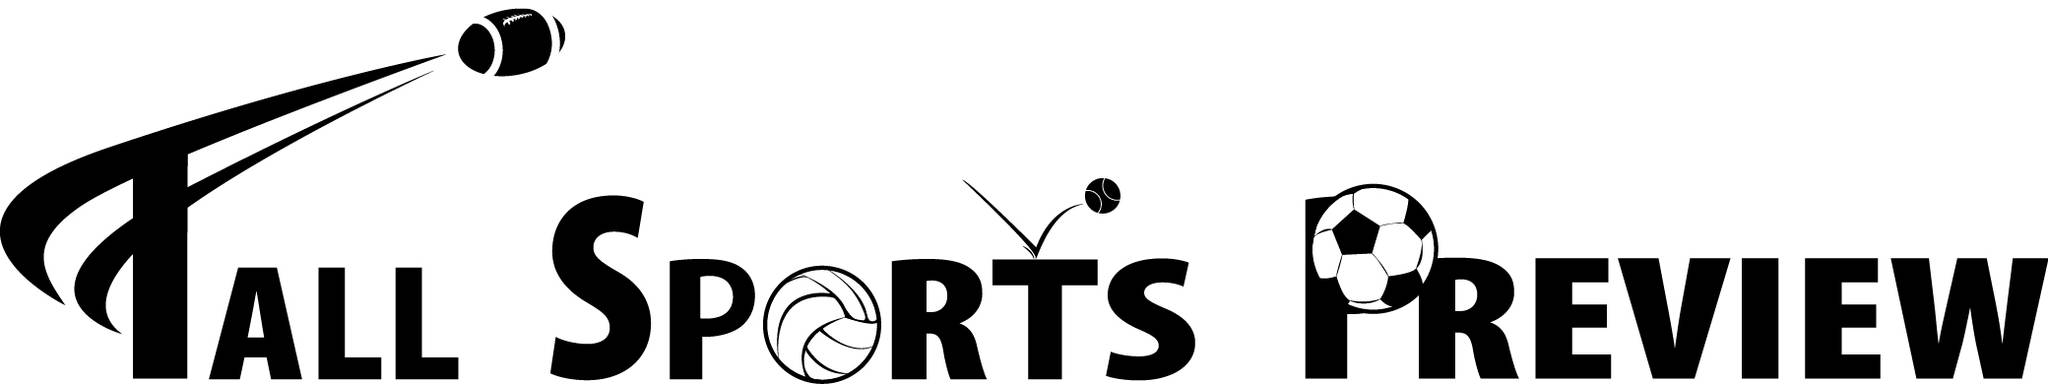 South Kitsap girls soccer | Fall Sports Preview